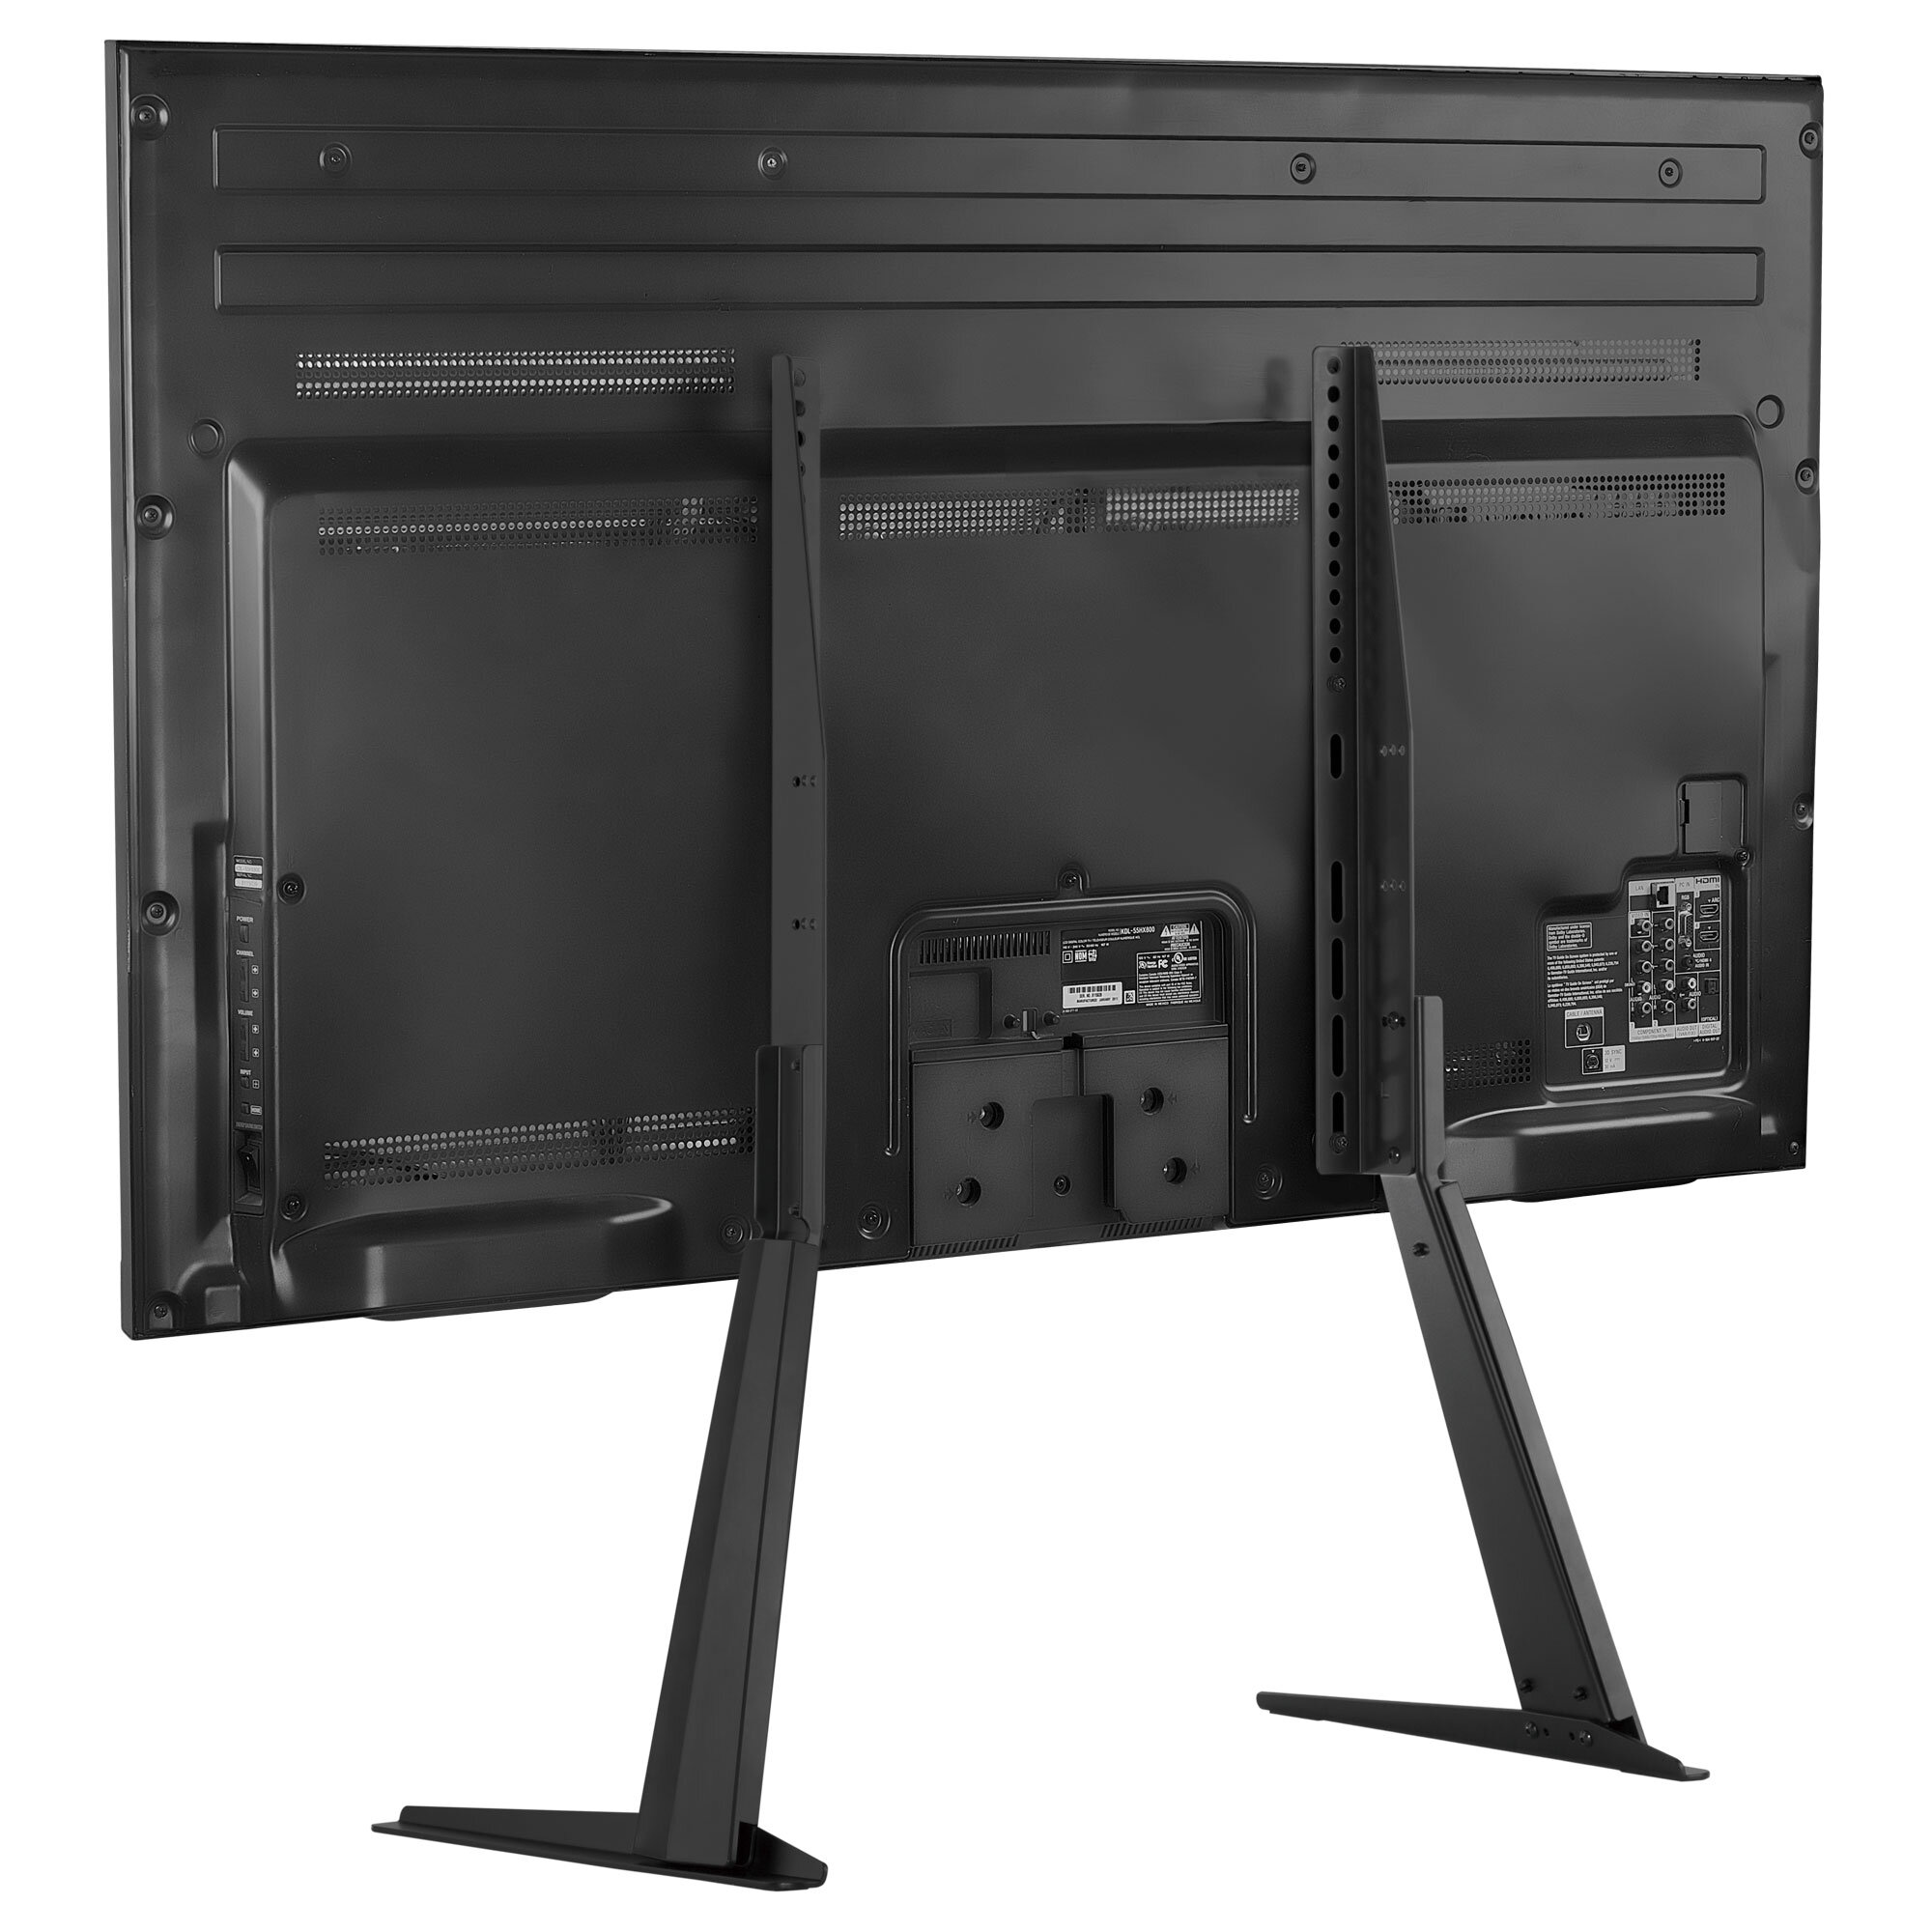 5Universal TV Base for 14"-55" LCD/LED TV Tabletop Mount Bracket Holder US 